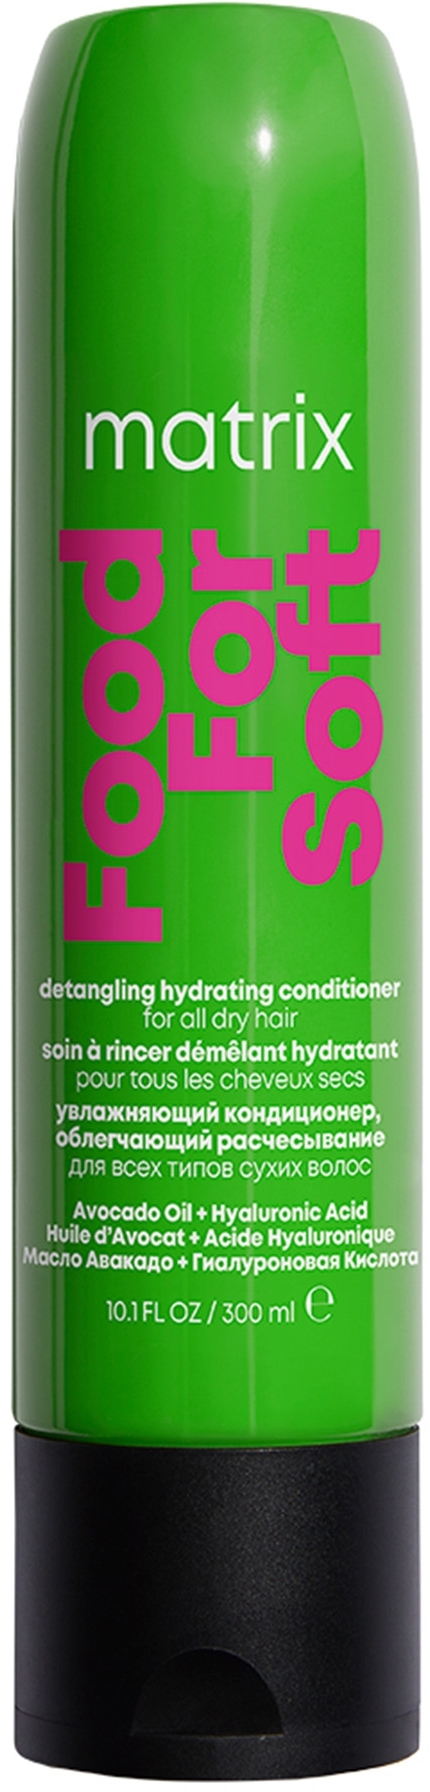 Кондиционер для увлажнения и облегчения расчесывания волос - Matrix Food For Soft Detangling Hydrating Conditioner — фото 300ml